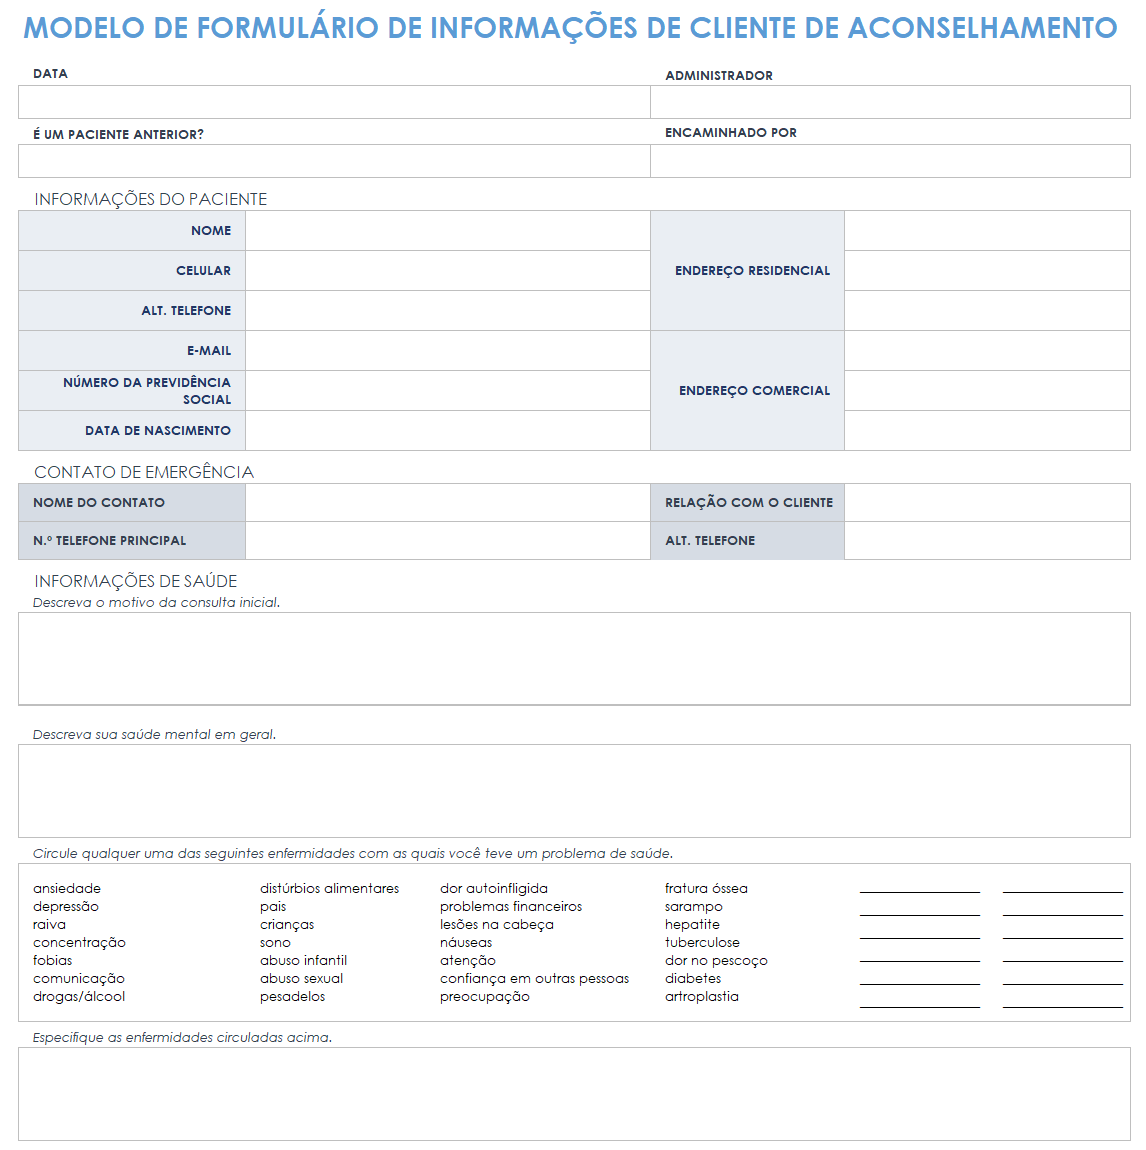  modelo de formulário de informações de aconselhamento ao cliente